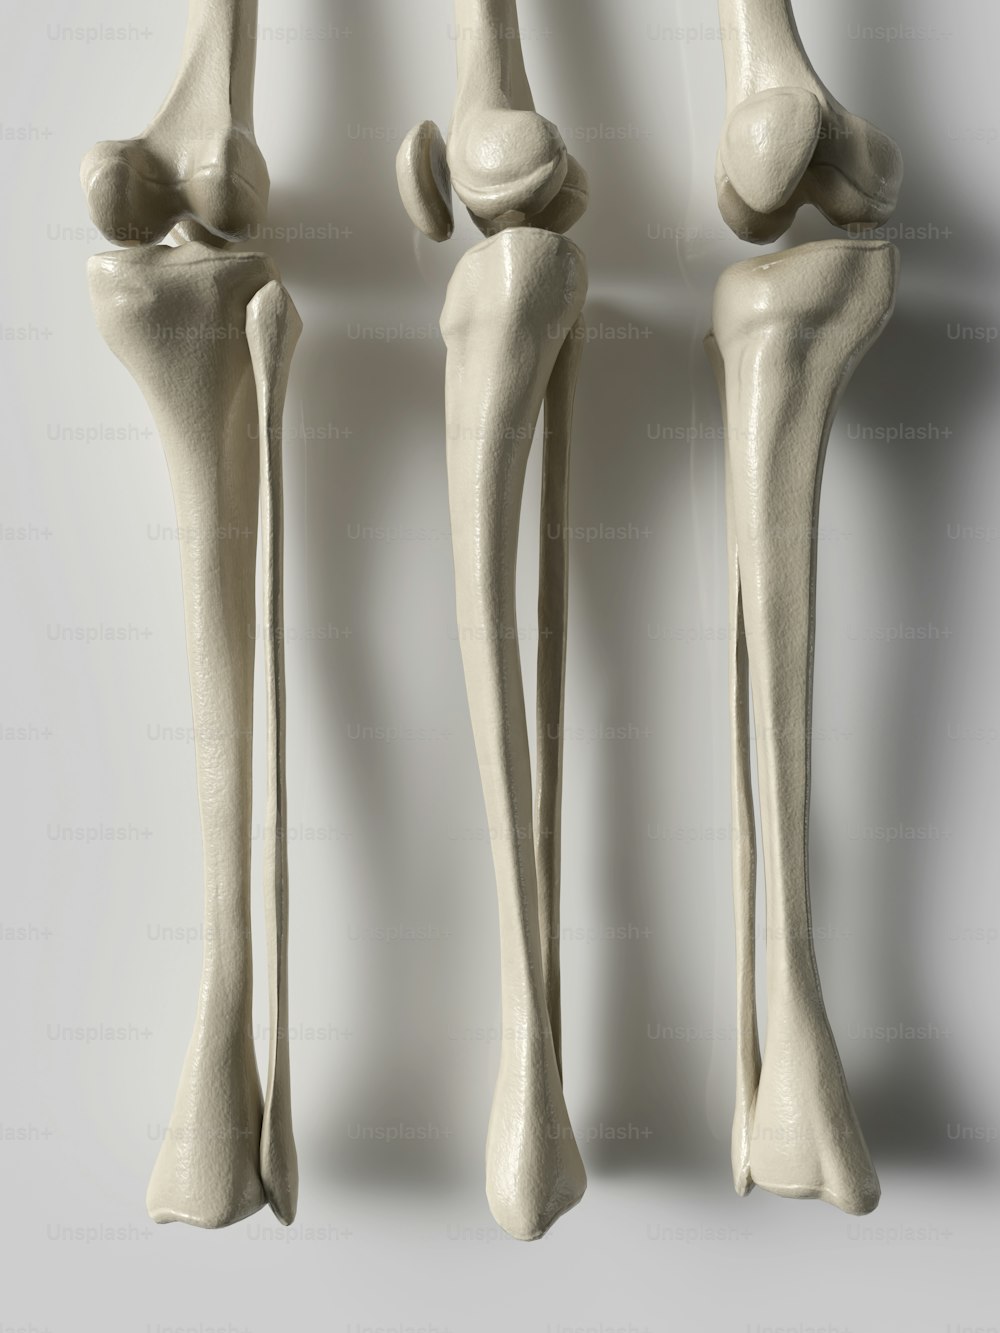 Tre diverse visioni delle ossa di un essere umano